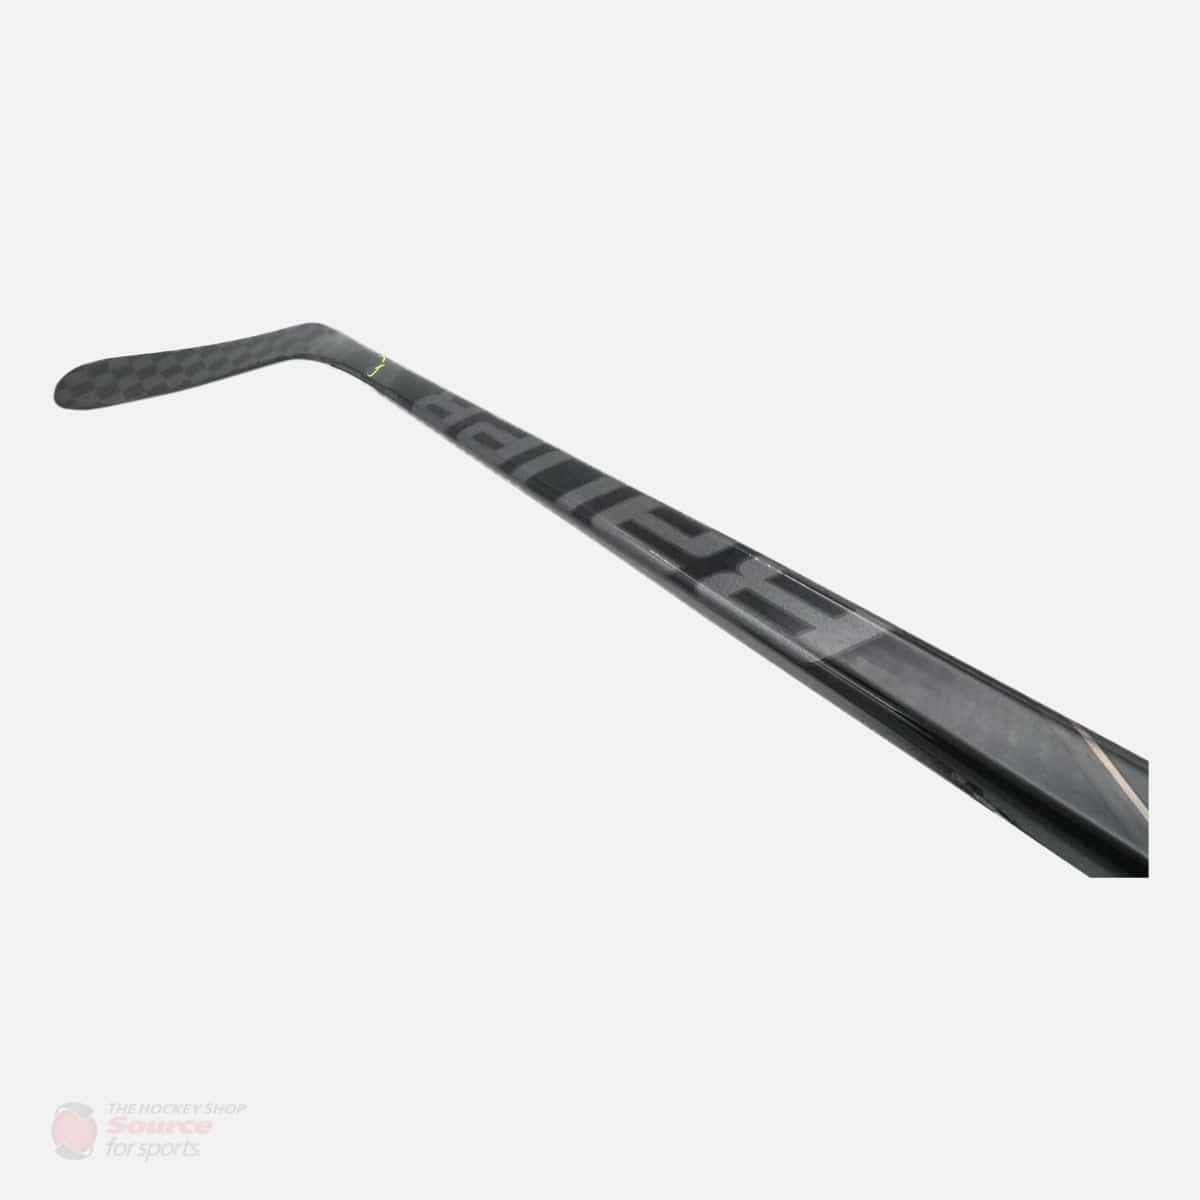 Bauer Vapor Flylite Junior Hockey Stick - Shadow Series - 50 Flex